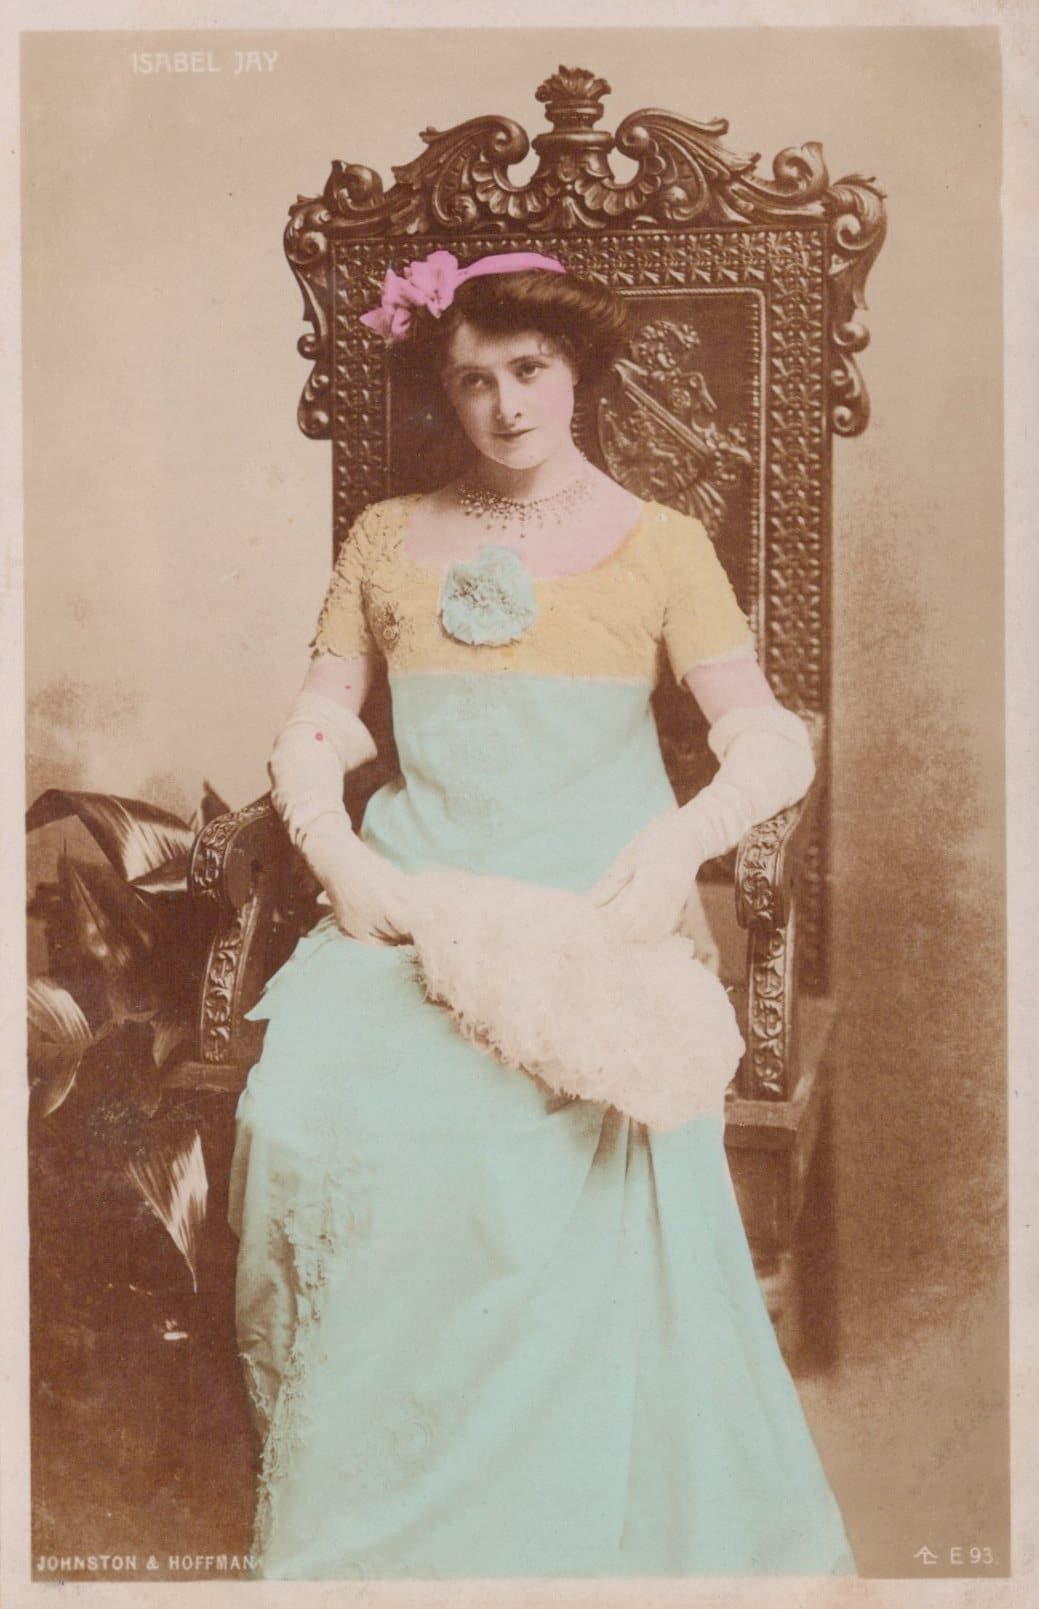 Actress Postcard - English Actress and Opera Singer Isobel Jay - Mo’s Postcards 